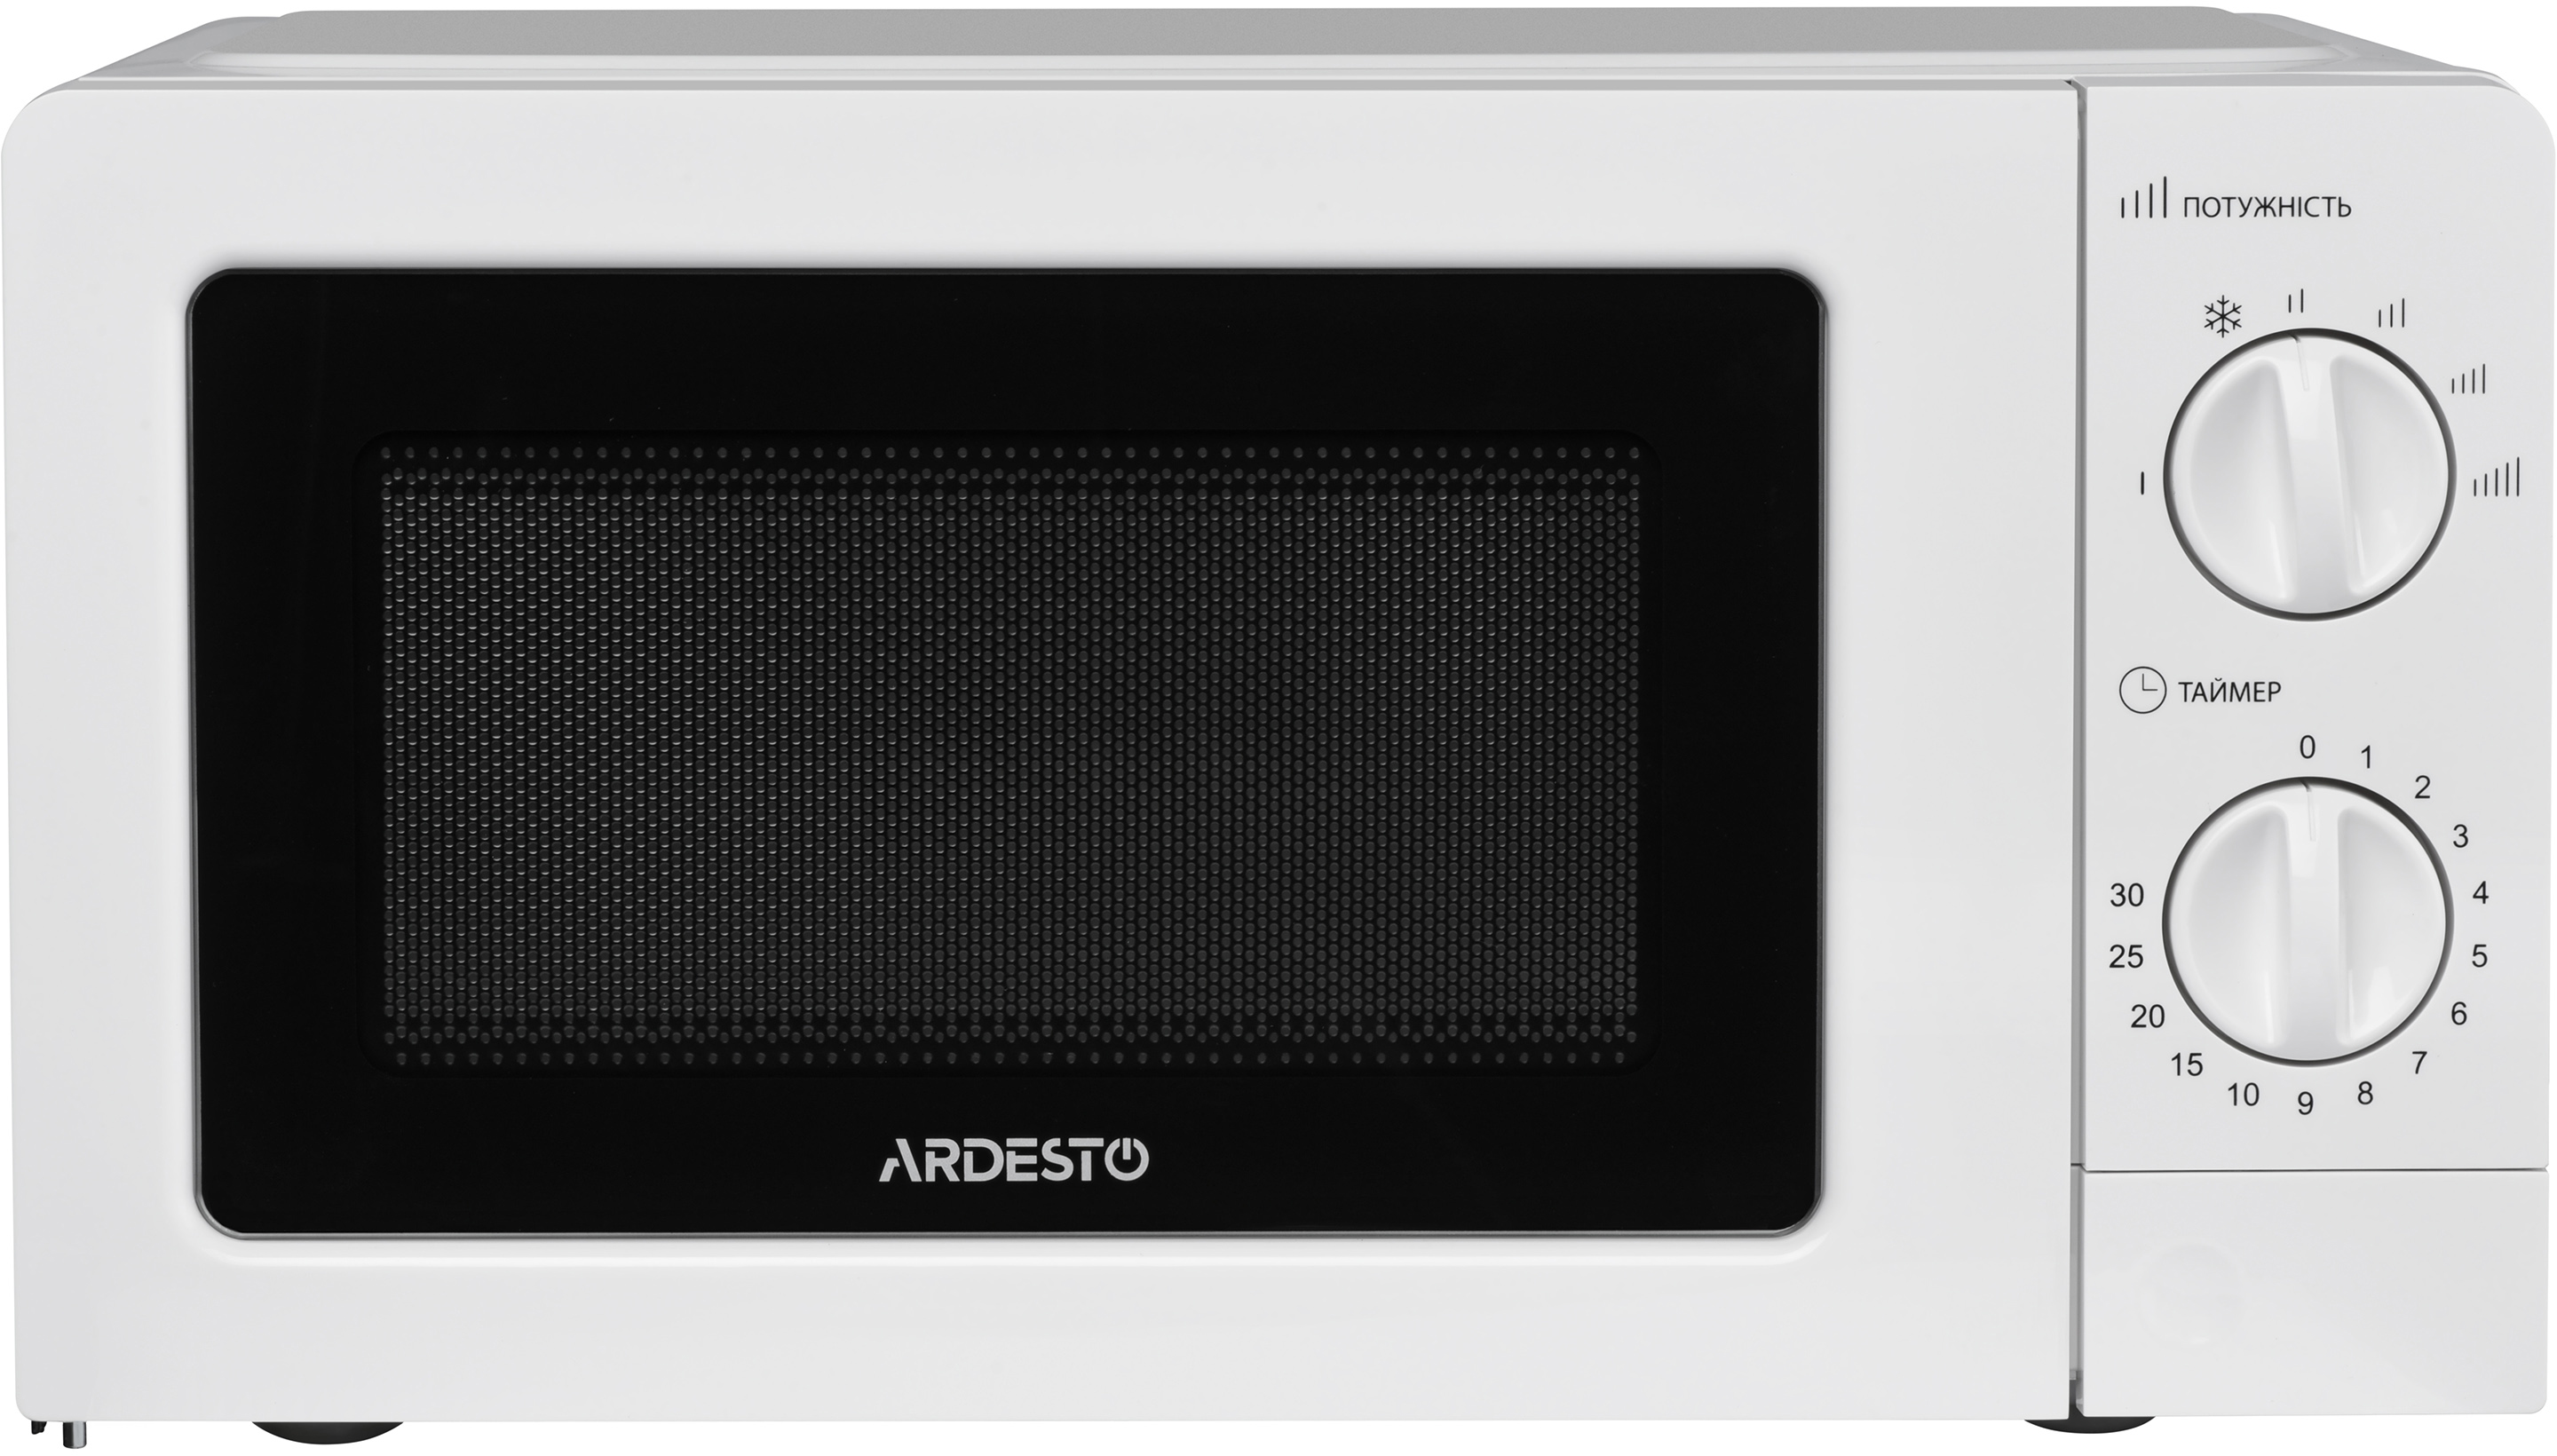 Микроволновая печь Ardesto GO-S723W цена 2264.90 грн - фотография 2